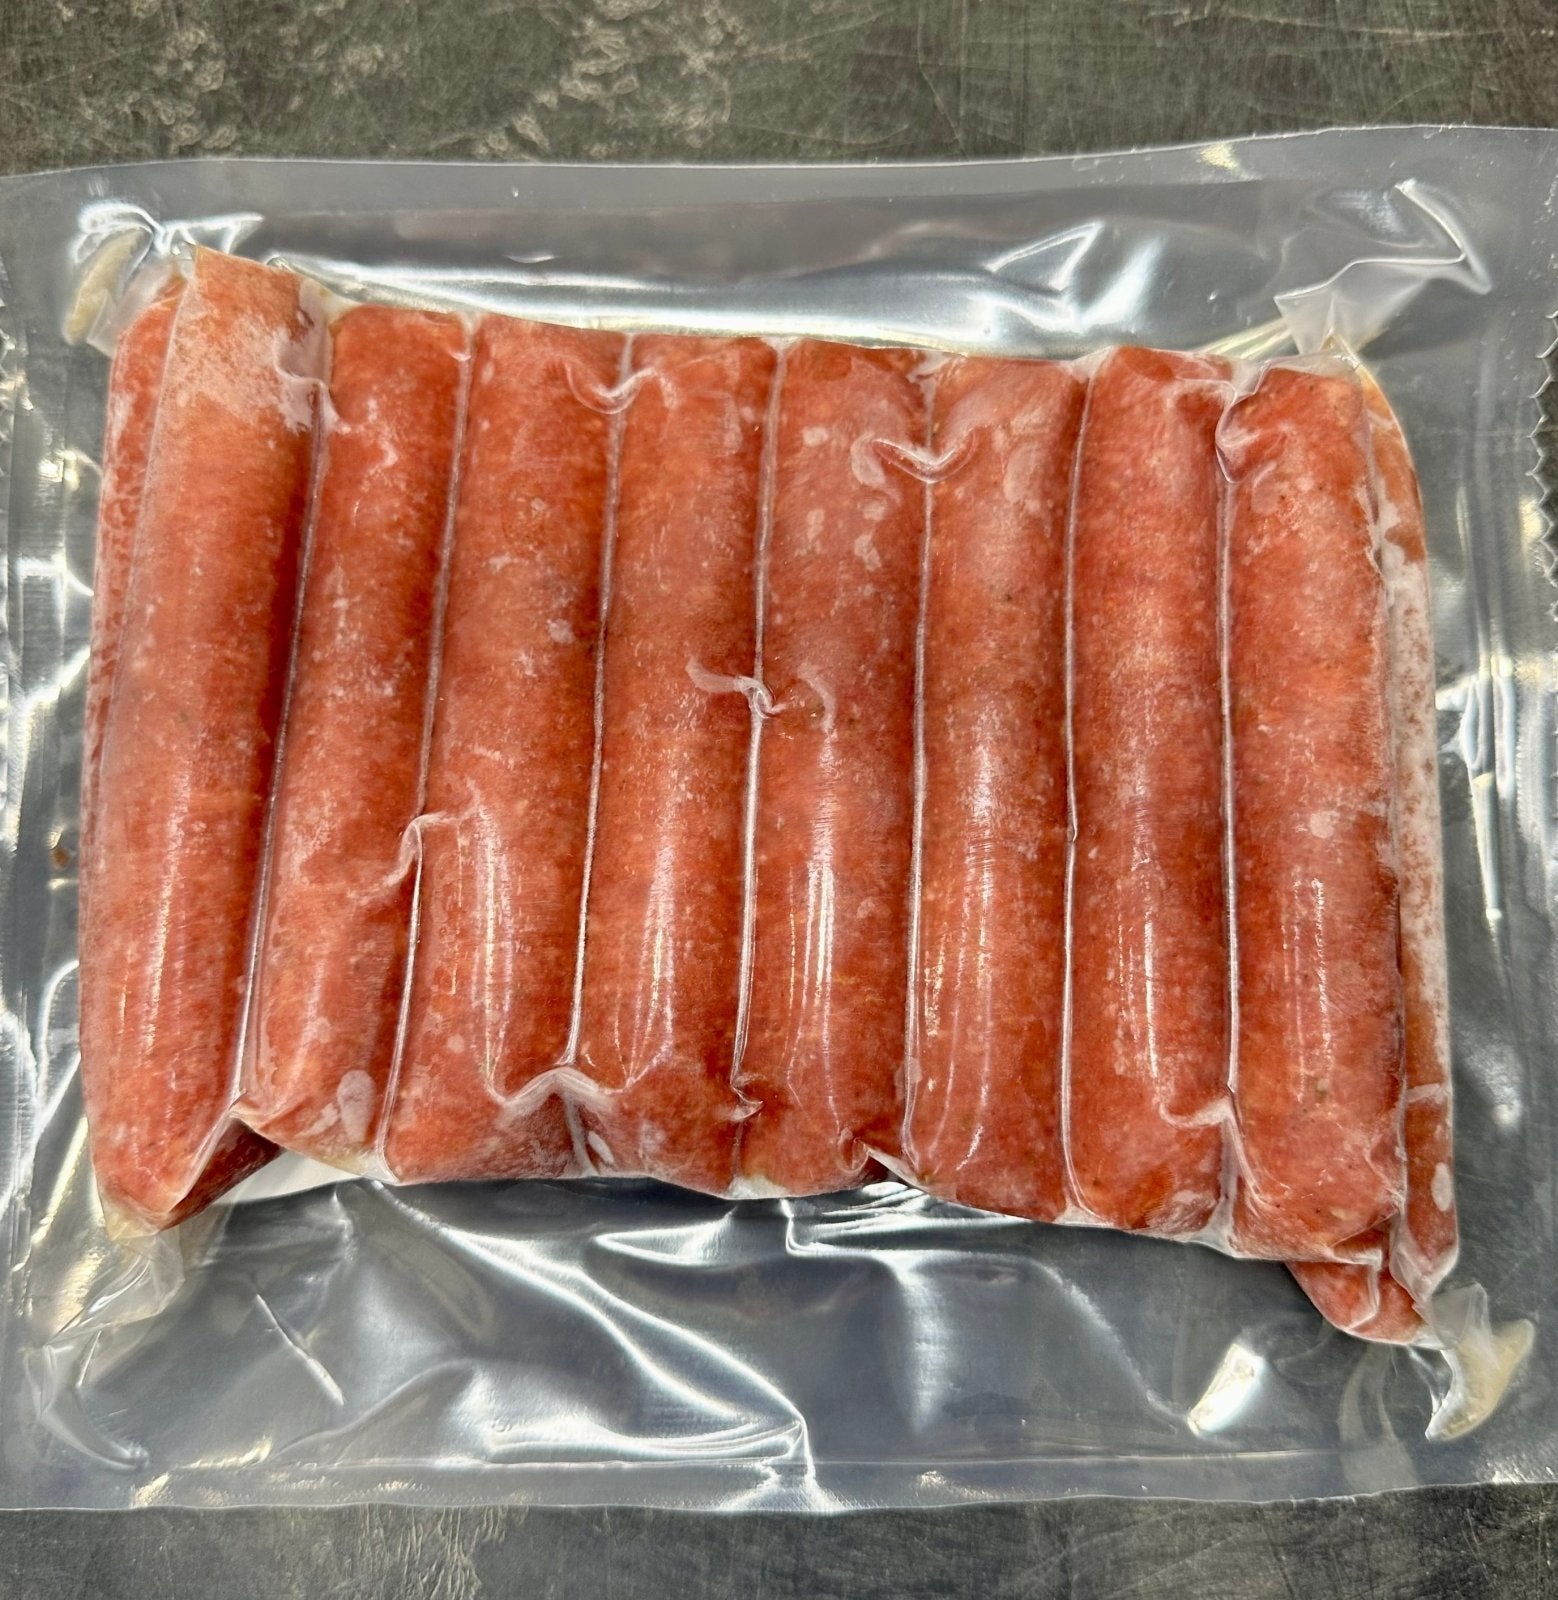 Pork - Spicy Pork Sausage Links (10 Links 1lb) - Rebel Pastures